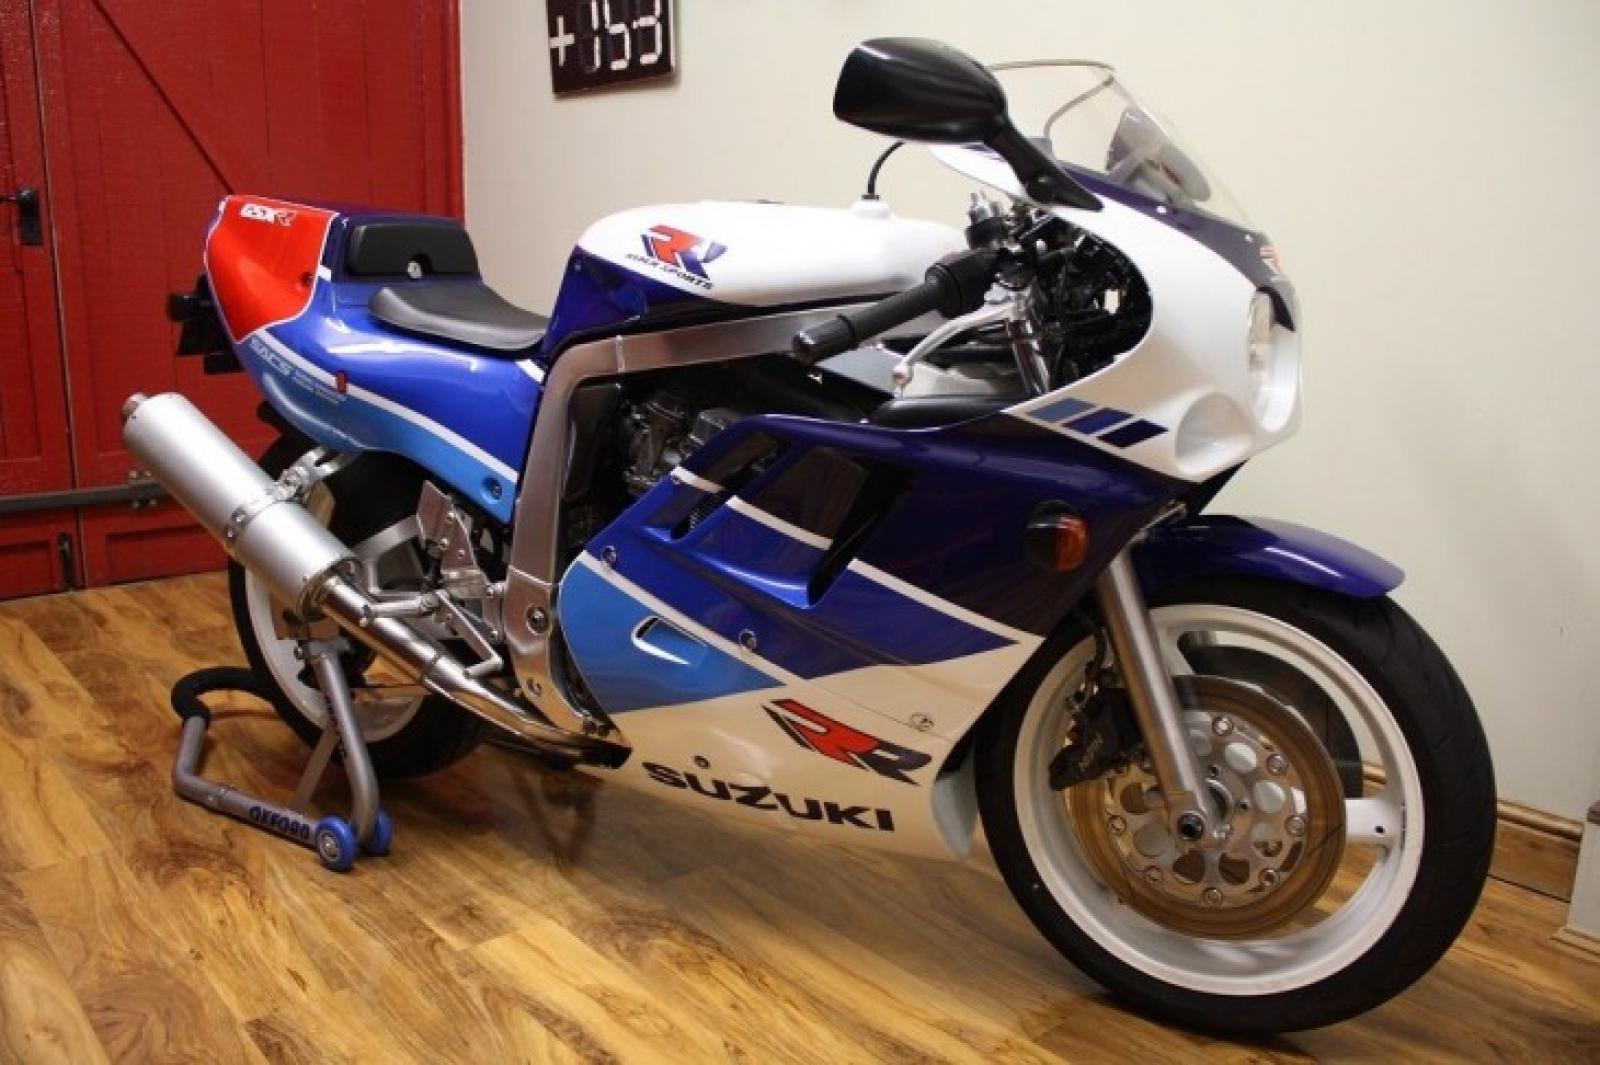 1989 Suzuki GSXR 1100 (reduced effect)